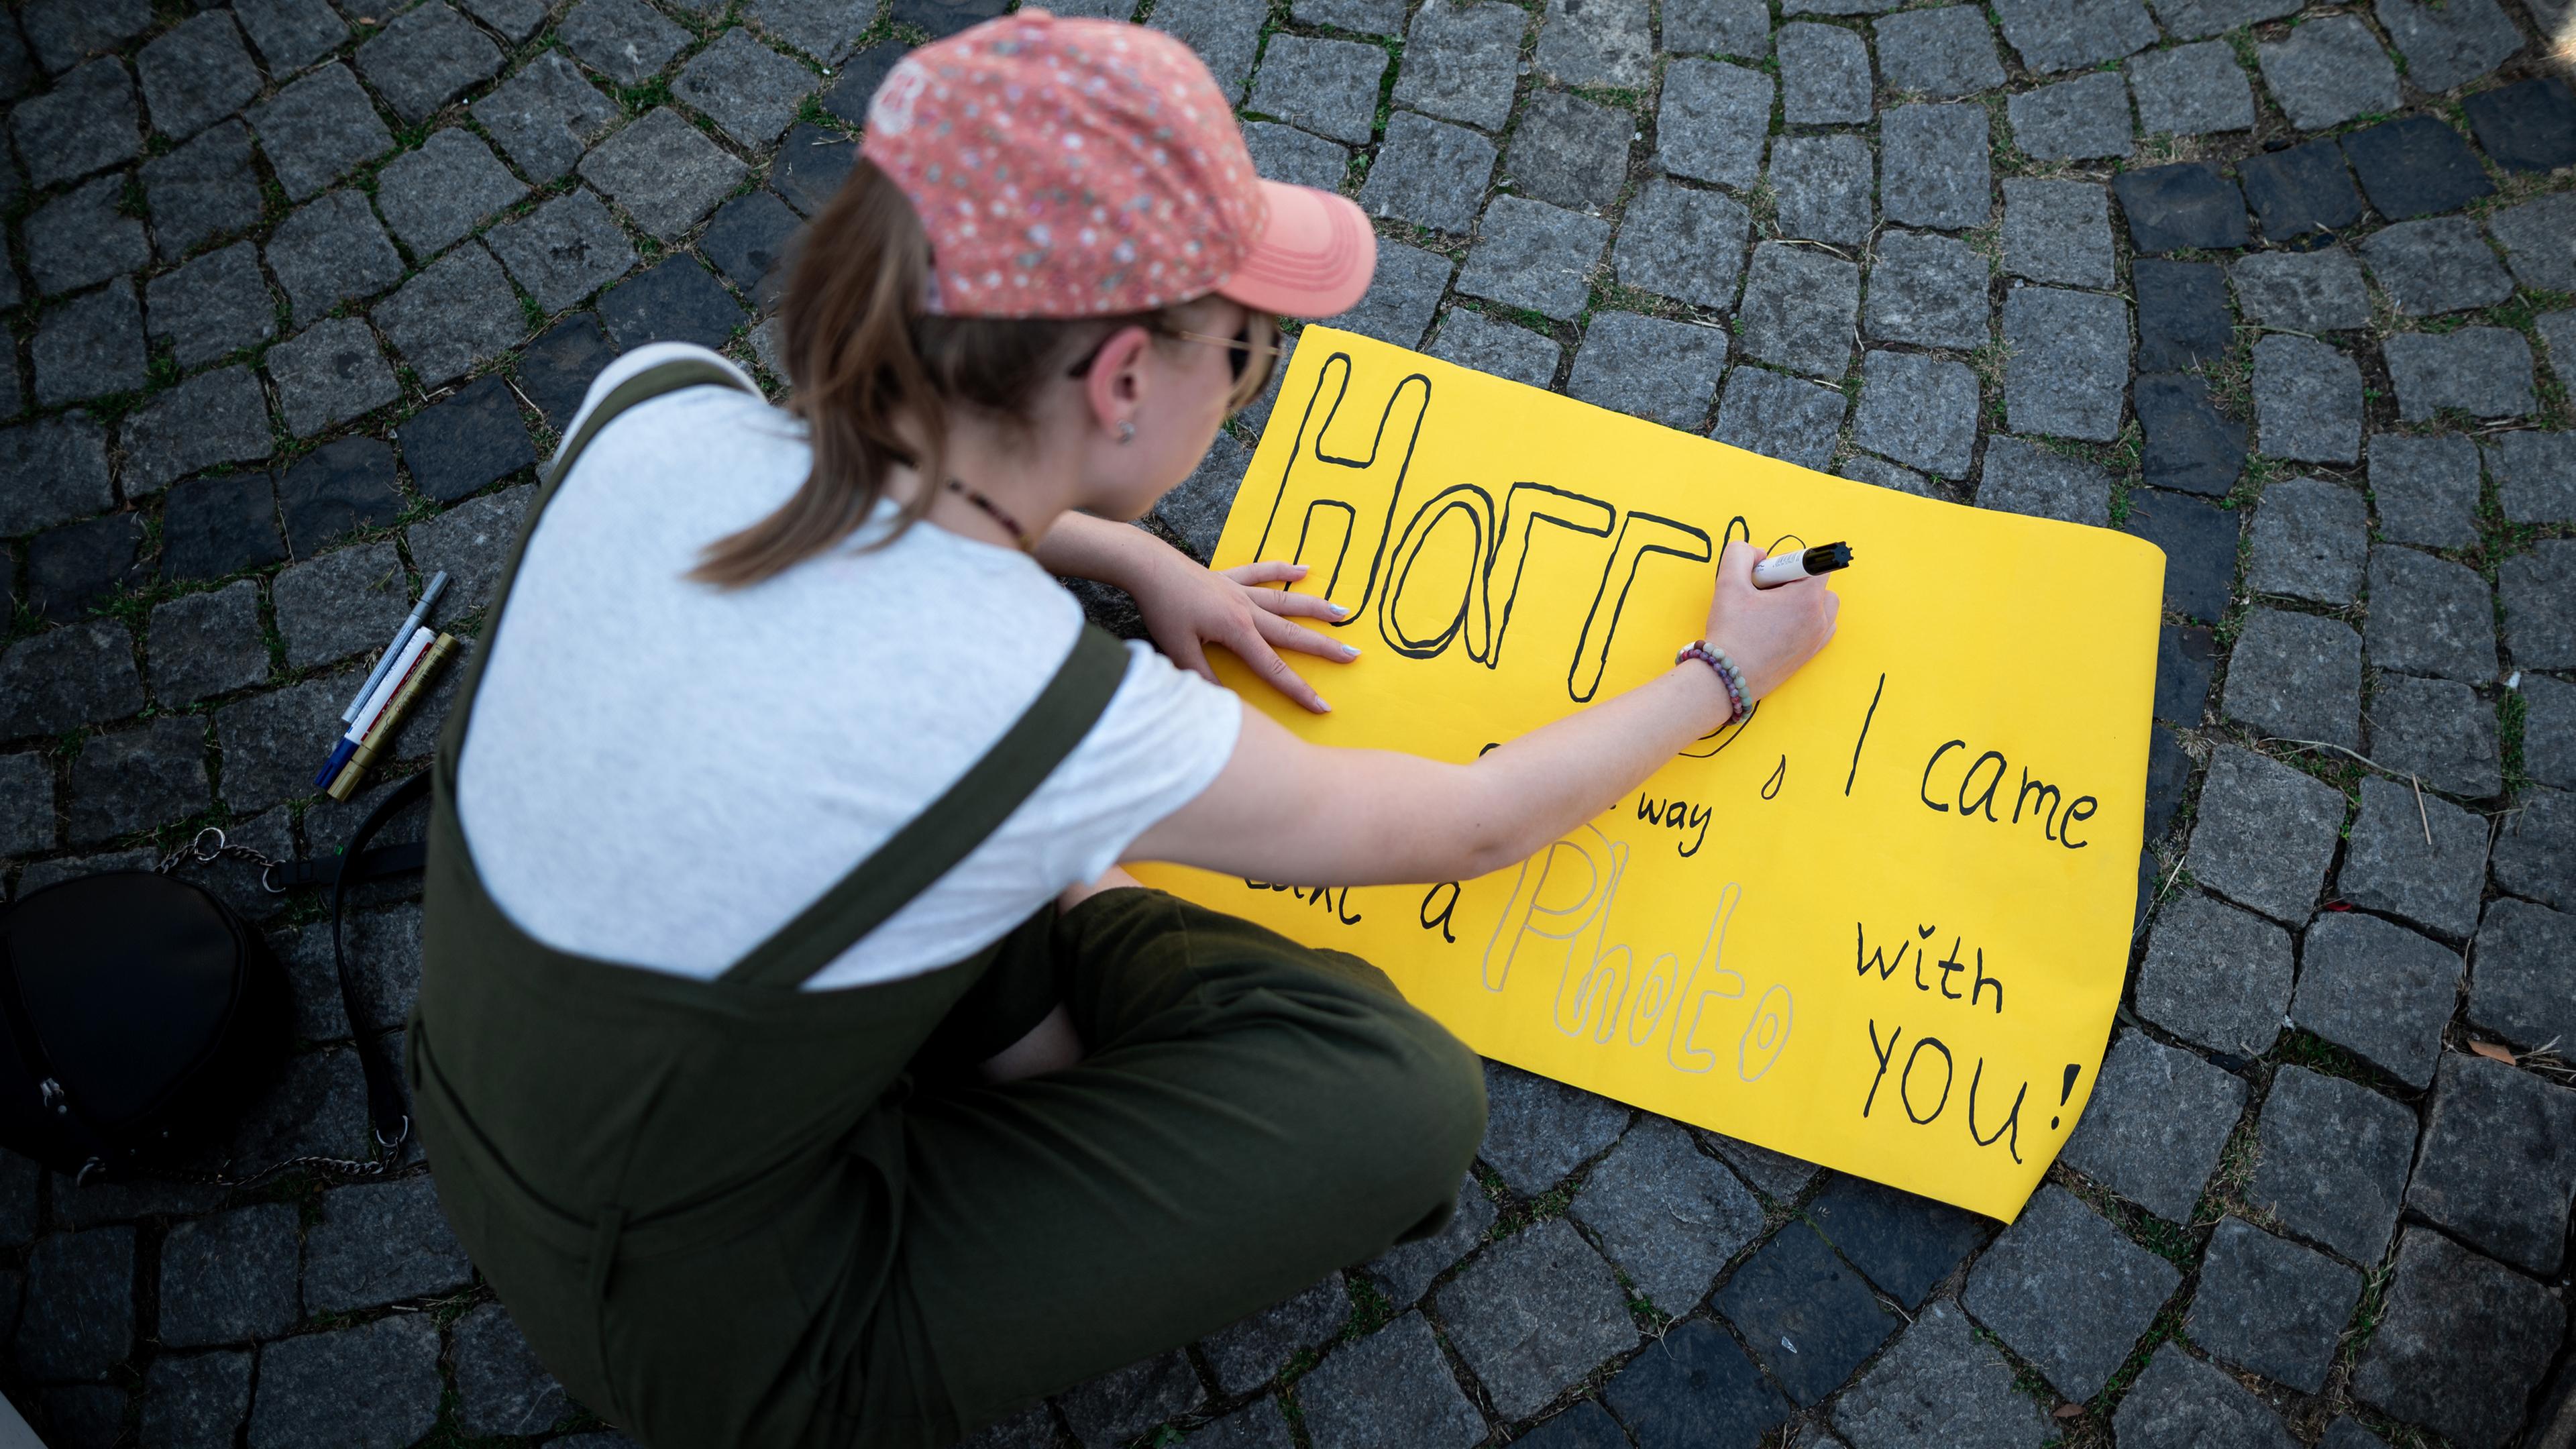 Nordrhein-Westfalen, Düsseldorf: Madeleine schreibt auf ein Banner "Harry, I came all the way to take a photo with you!" vor dem Besuch von Prinz Harry anlässlich der Eröffnung der 6. Invictus Games.